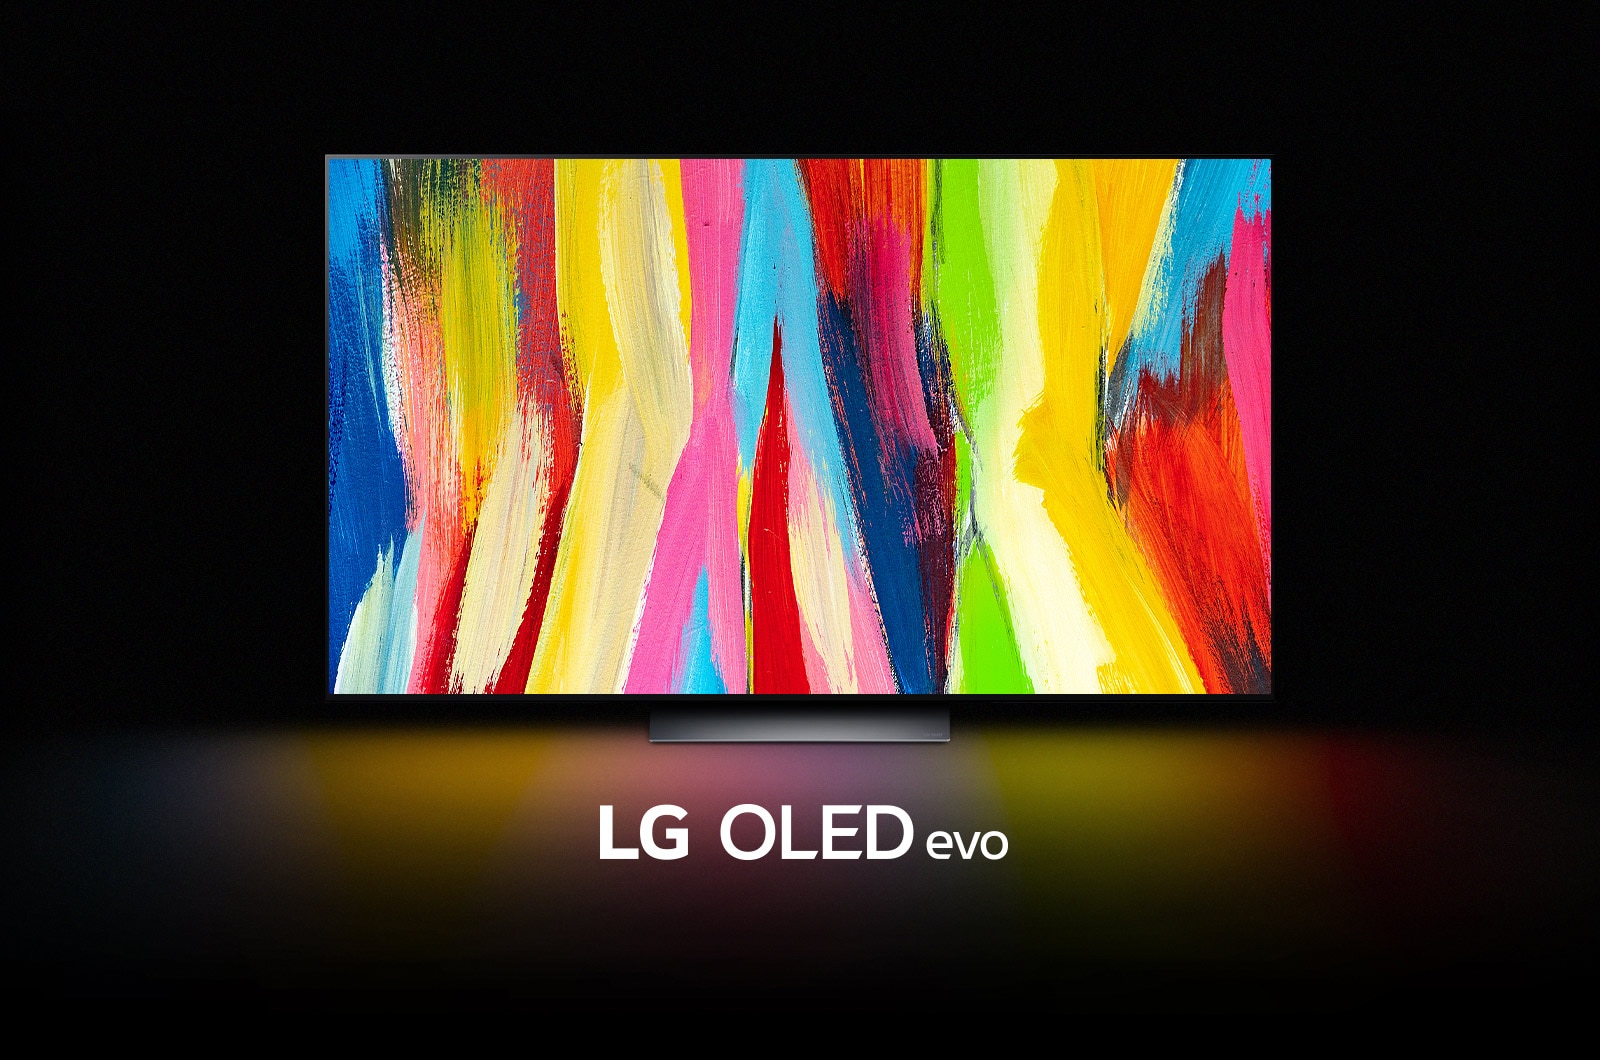 LG OLED C2 je v temni sobi s pisano abstraktno umetnino navpičnih črt na zaslonu in napisom »LG OLED evo« pod njim.